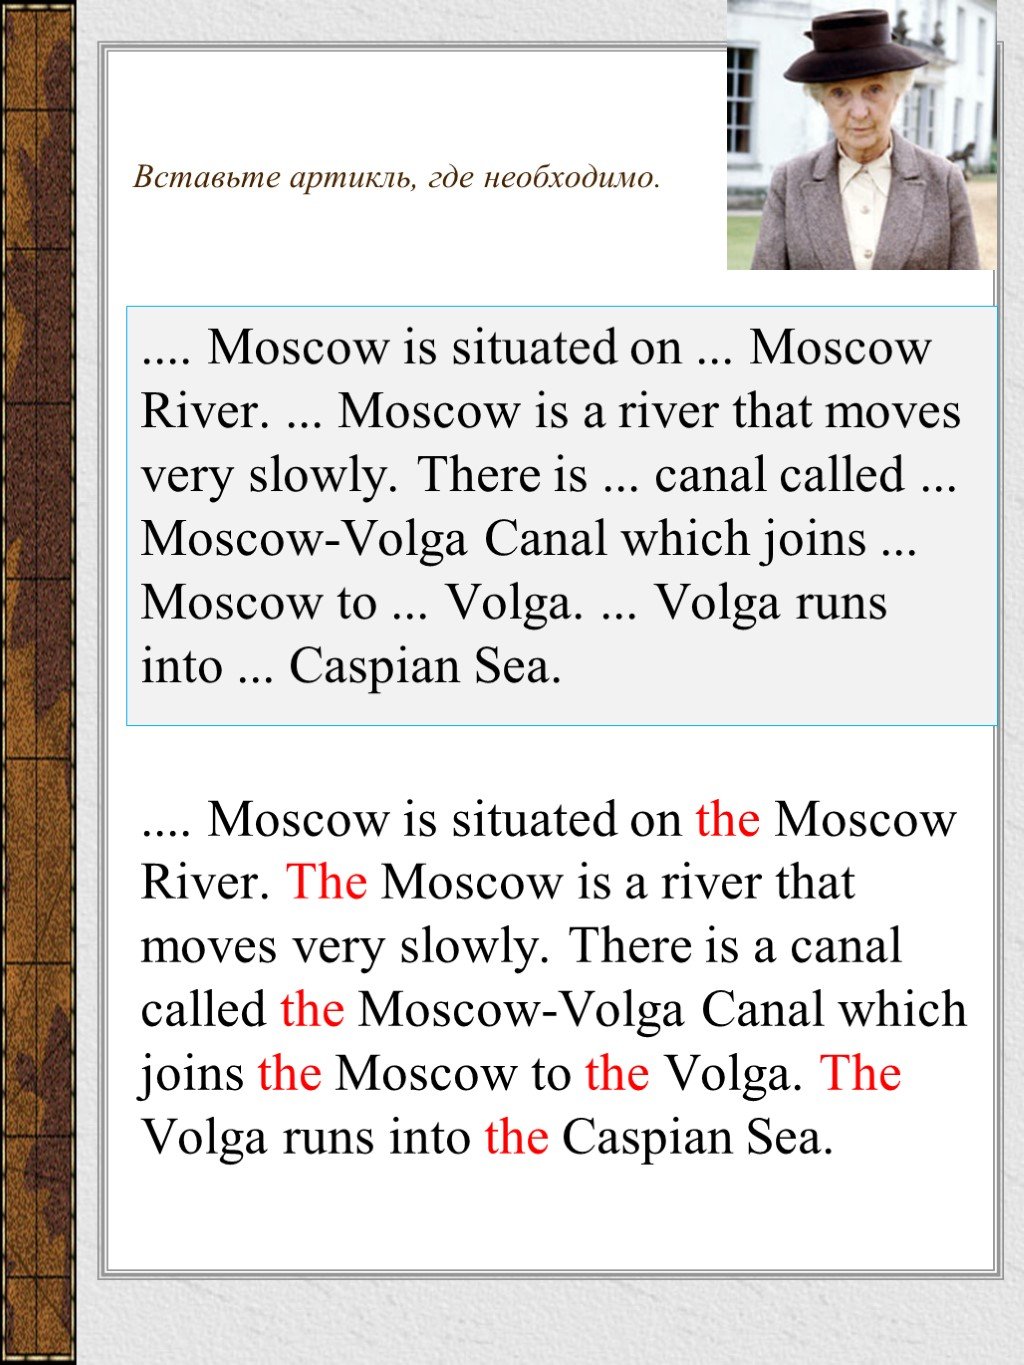 Volga артикль